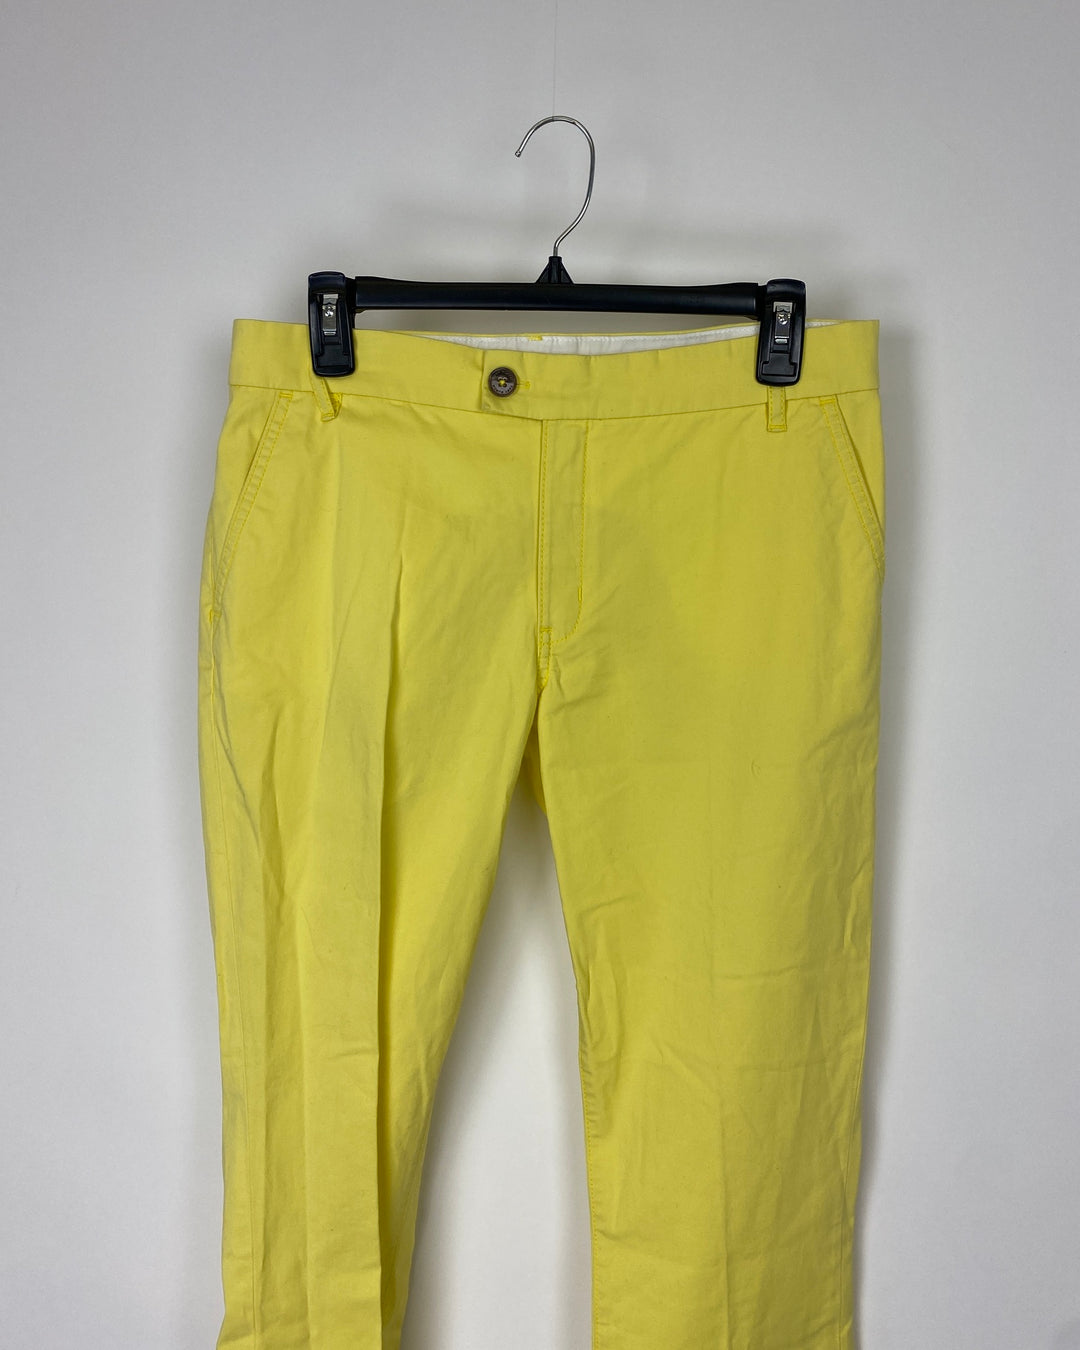 Yellow Pants - Size 27